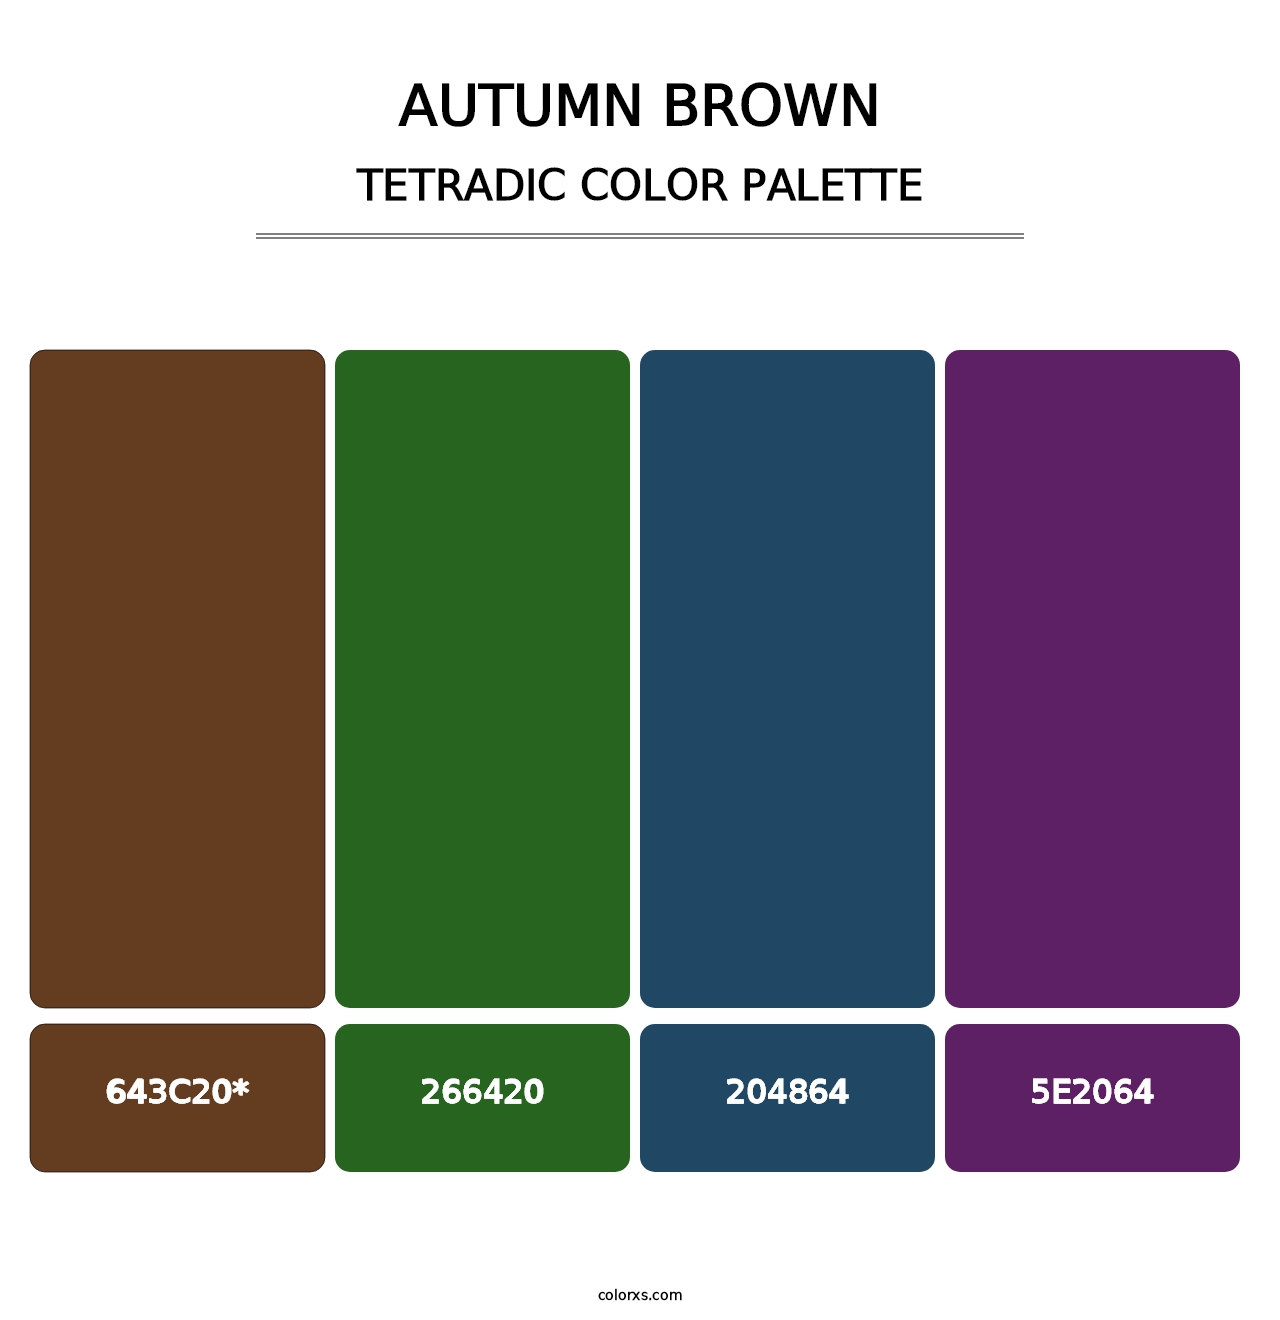 Autumn Brown - Tetradic Color Palette